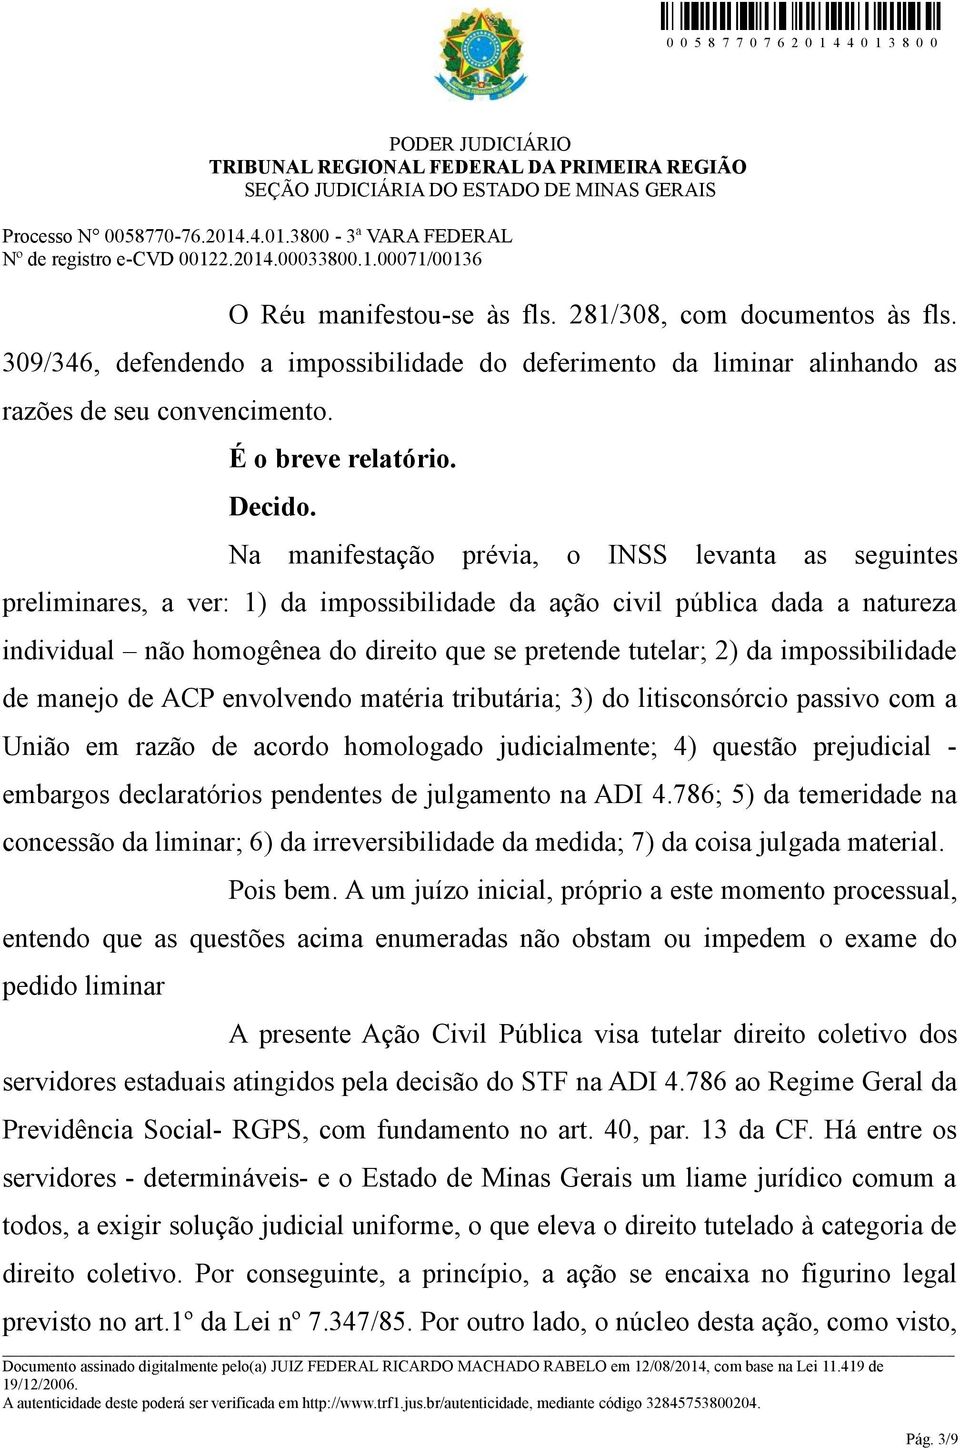 impossibilidade de manejo de ACP envolvendo matéria tributária; 3) do litisconsórcio passivo com a União em razão de acordo homologado judicialmente; 4) questão prejudicial - embargos declaratórios